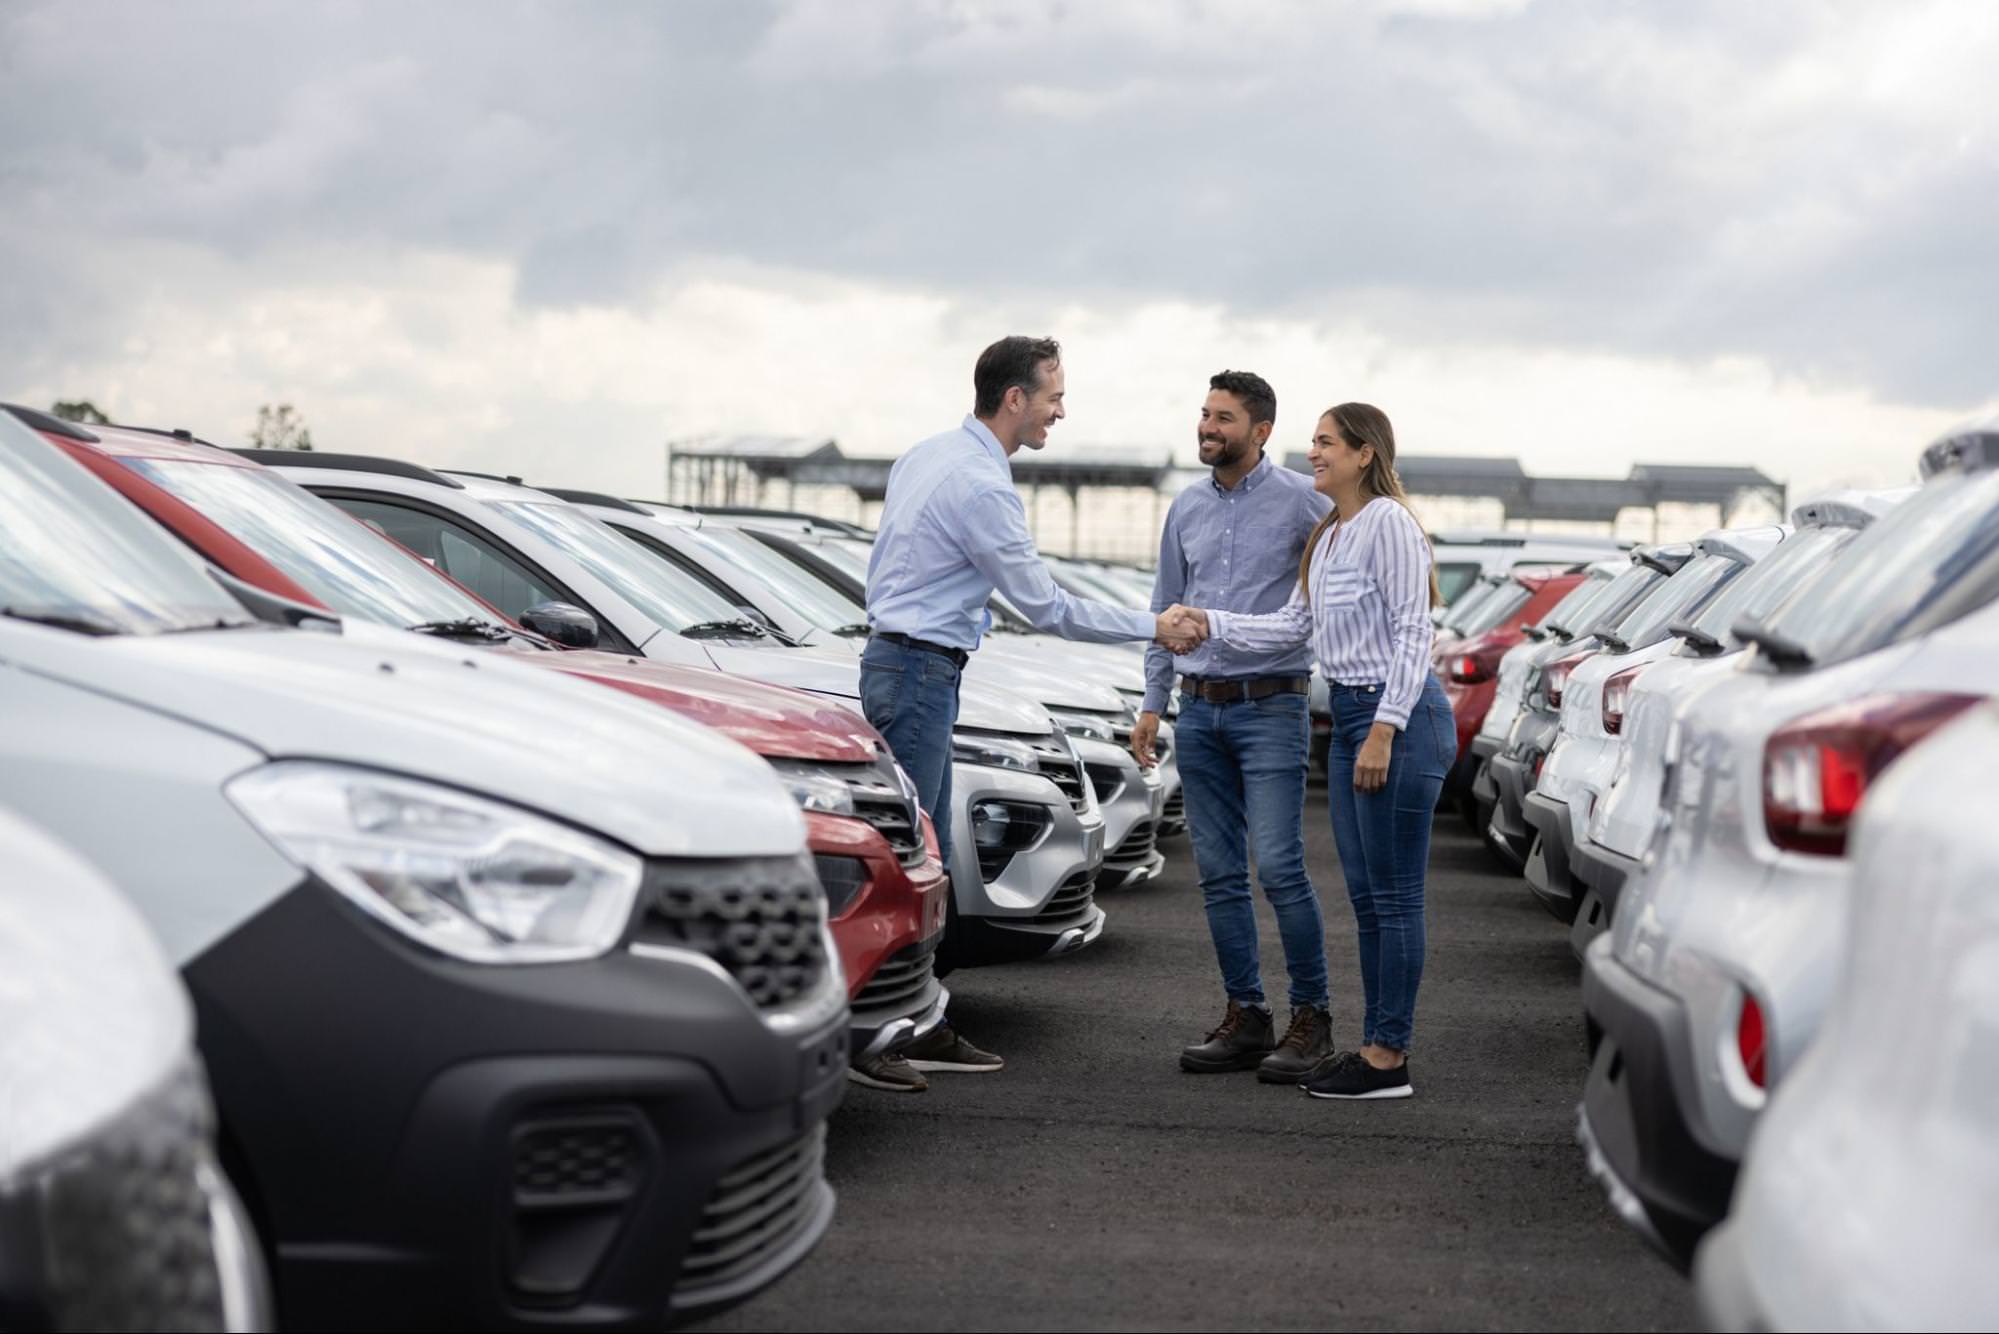 Tato scéna zobrazuje uzavření obchodu s automobilem, předvádí úspěšnou interakci se zákazníky a budování vztahů v prodejním prostředí.